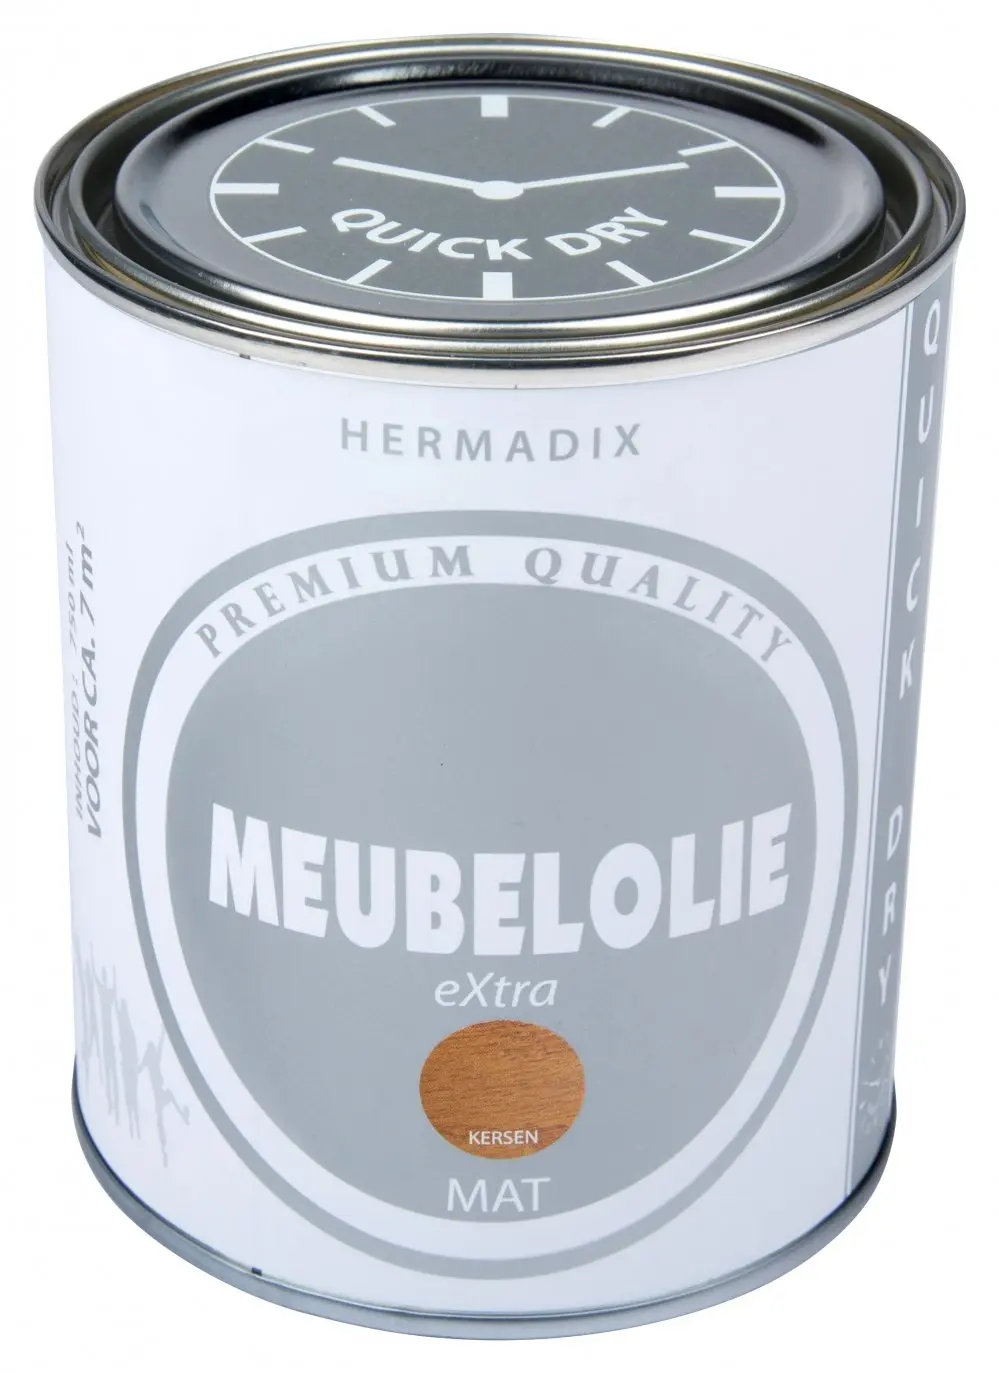 Hermadix - hermadix-meubellolie-extra-mat-kersen1-verfcompleet.nl